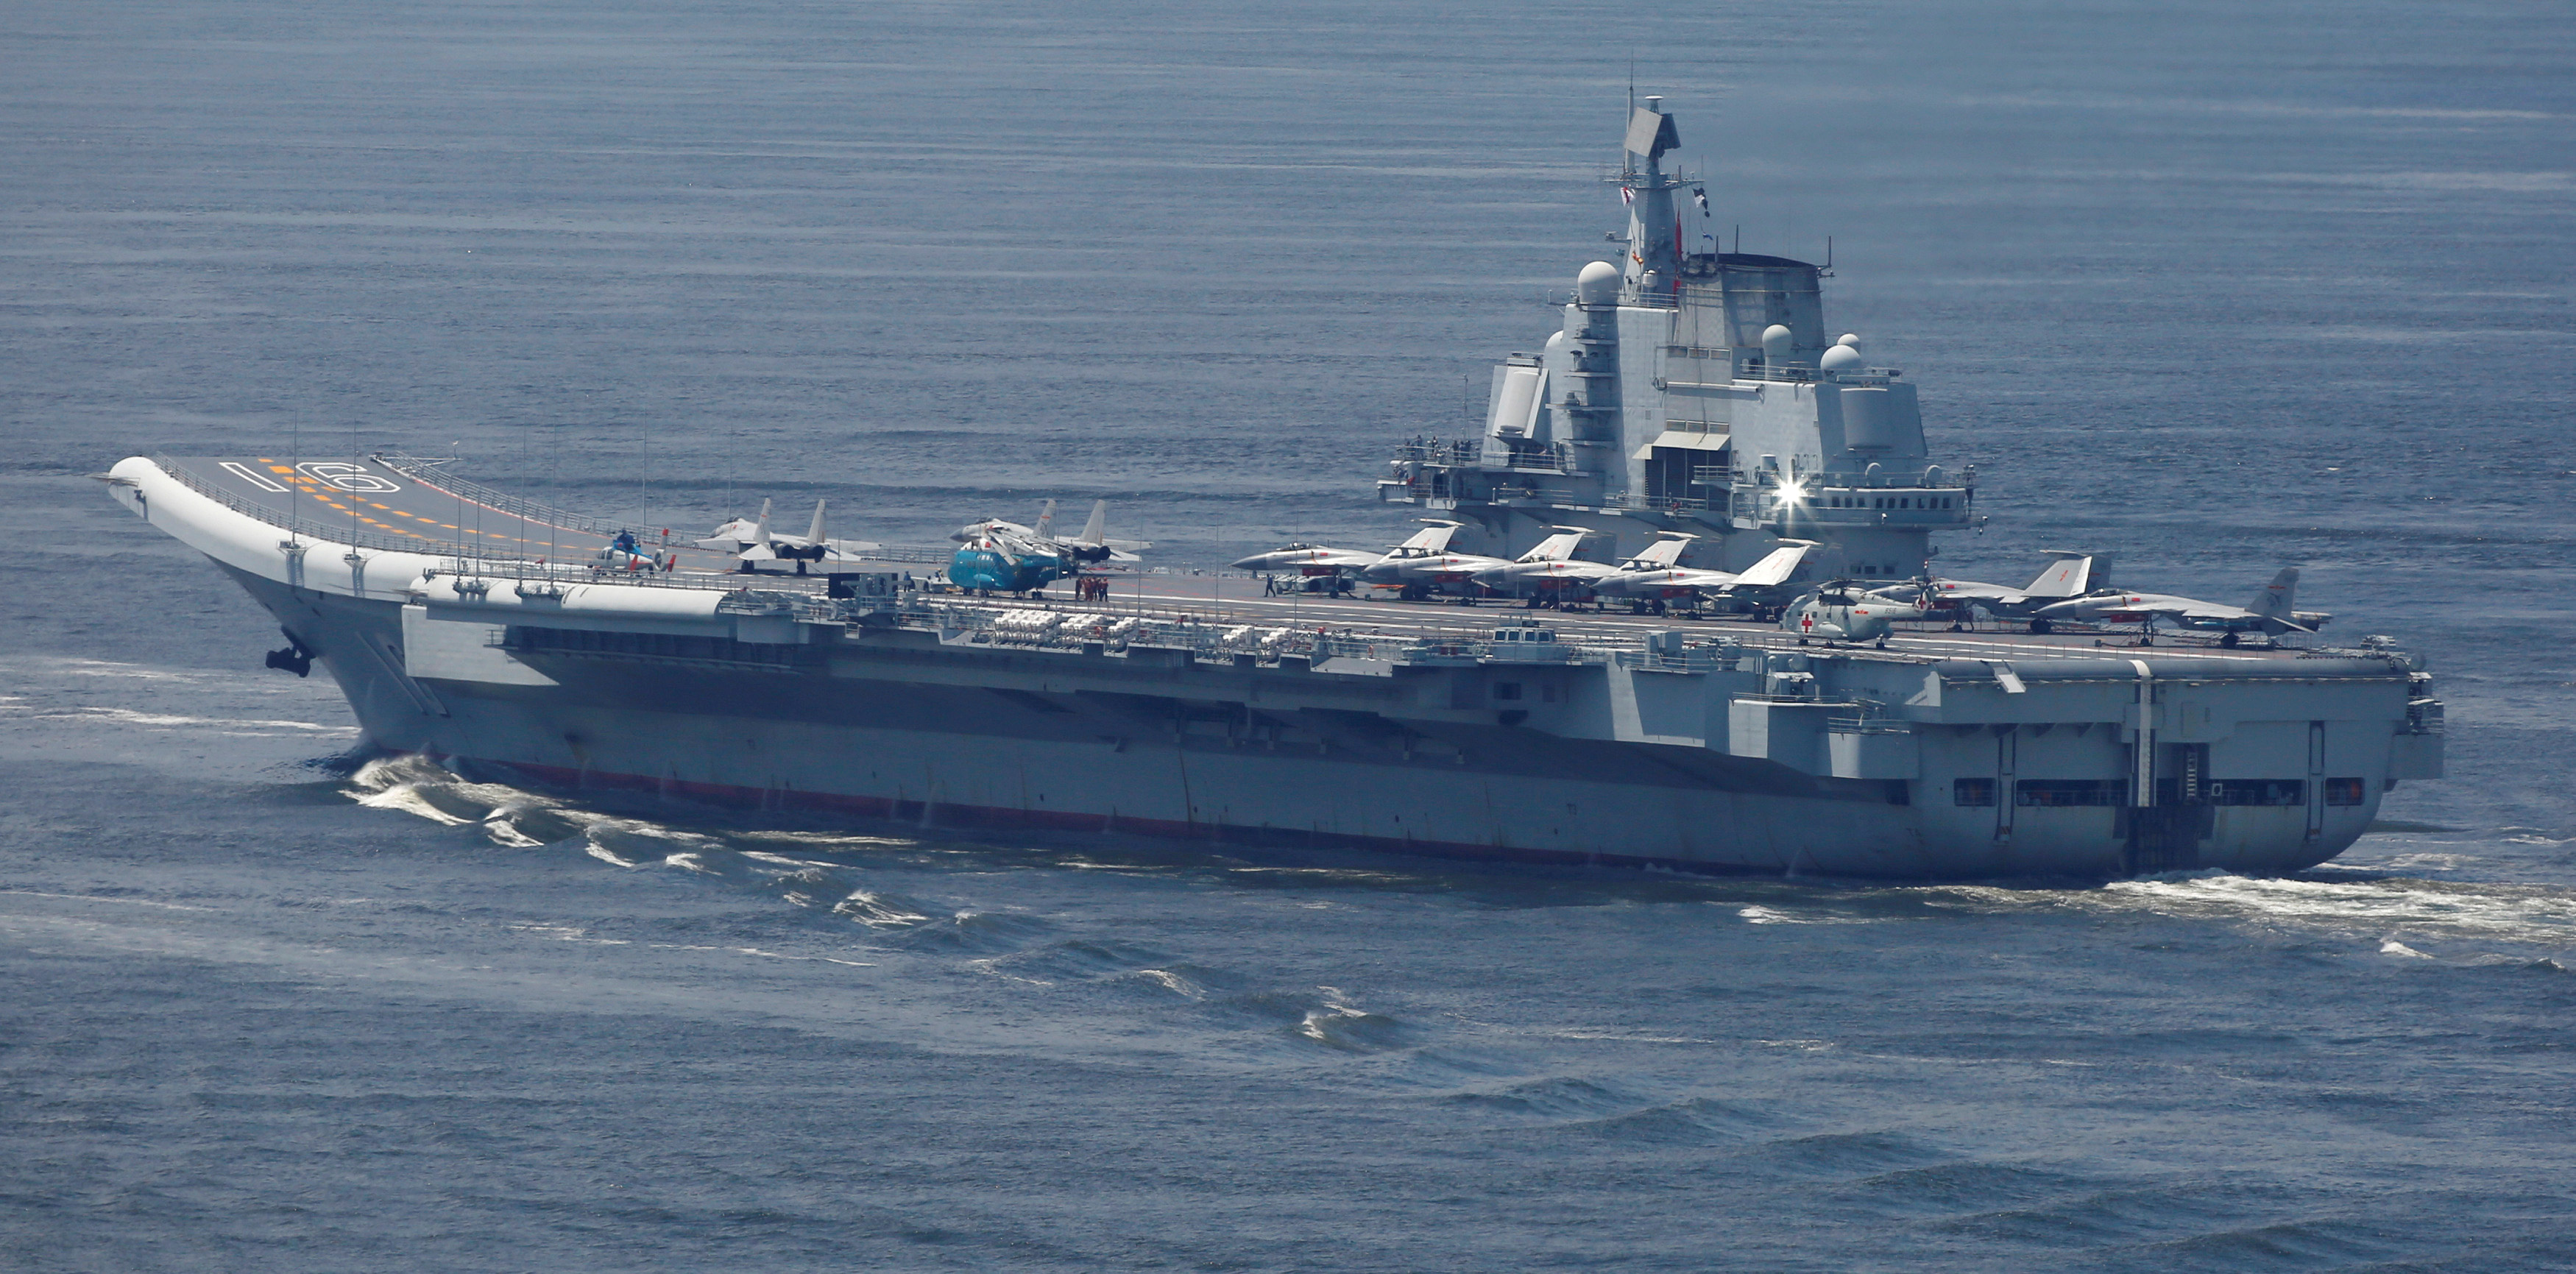 Después de las provocaciones a Japón, el portaaviones chino Liaoning llevó a cabo maniobras cerca de Taiwán (REUTERS/Bobby Yip)